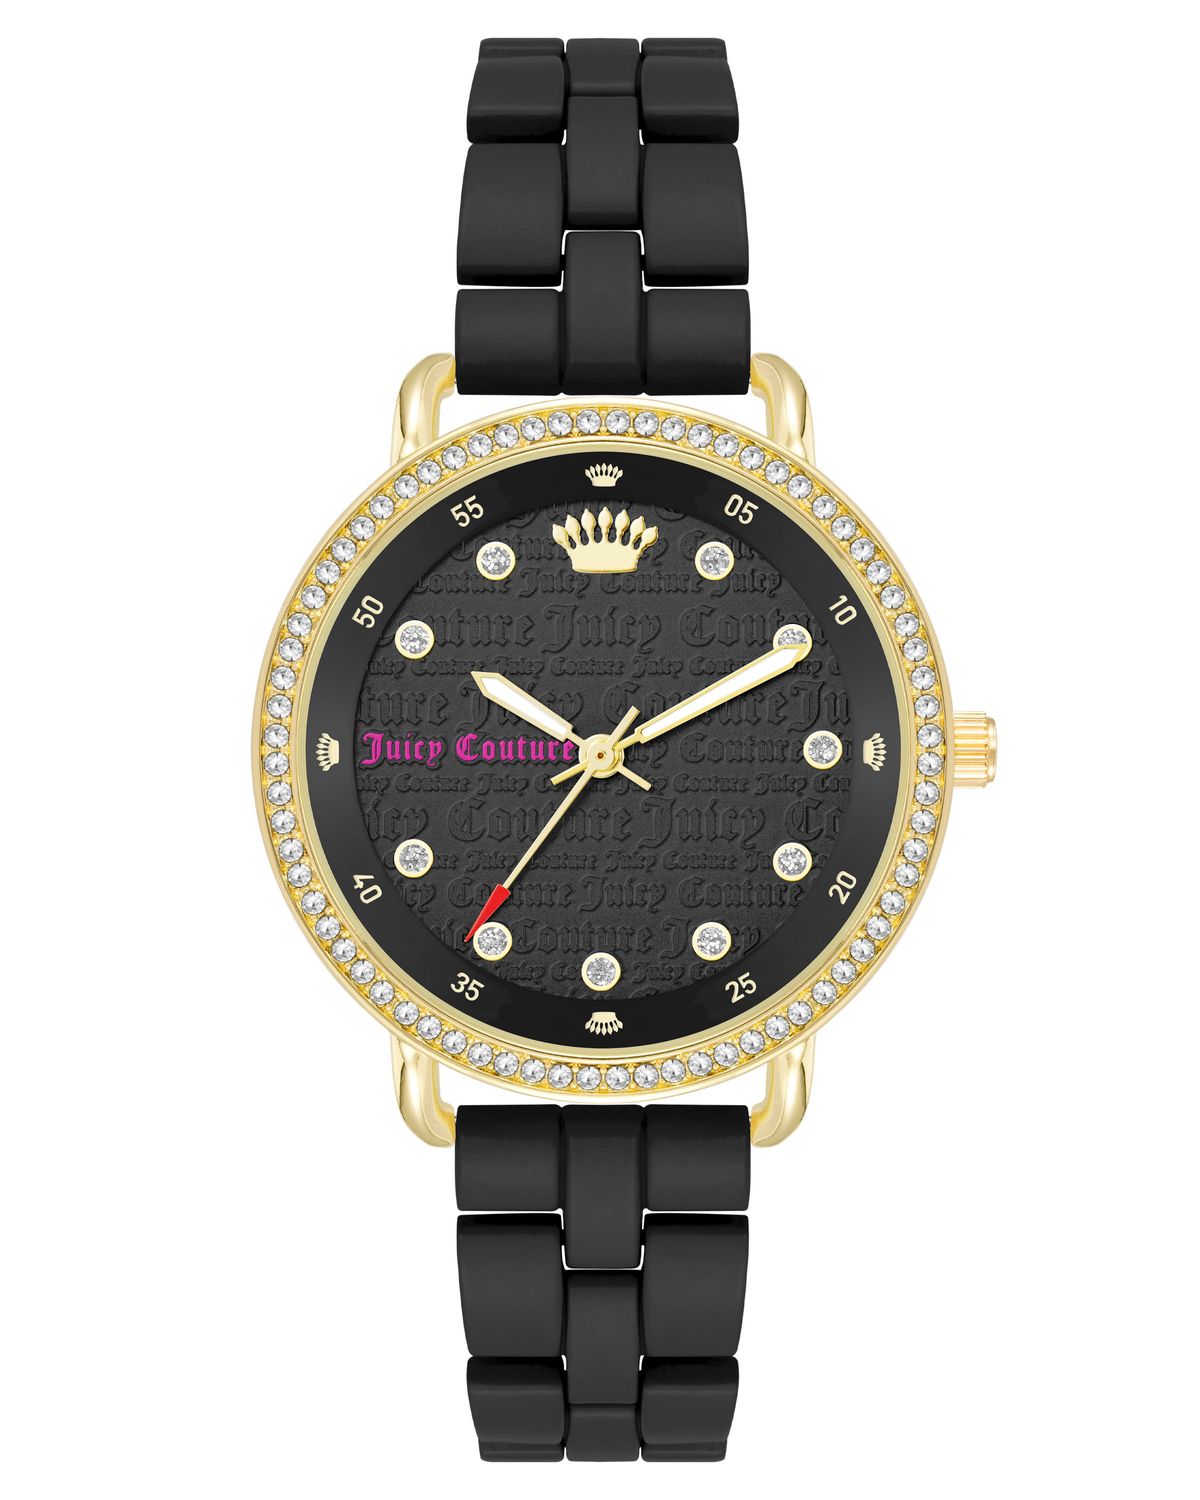 Juicy Couture Ladies Elegant Watch JC.55.3.34.0614S Gold Dial - Stainles  Steel | eBay